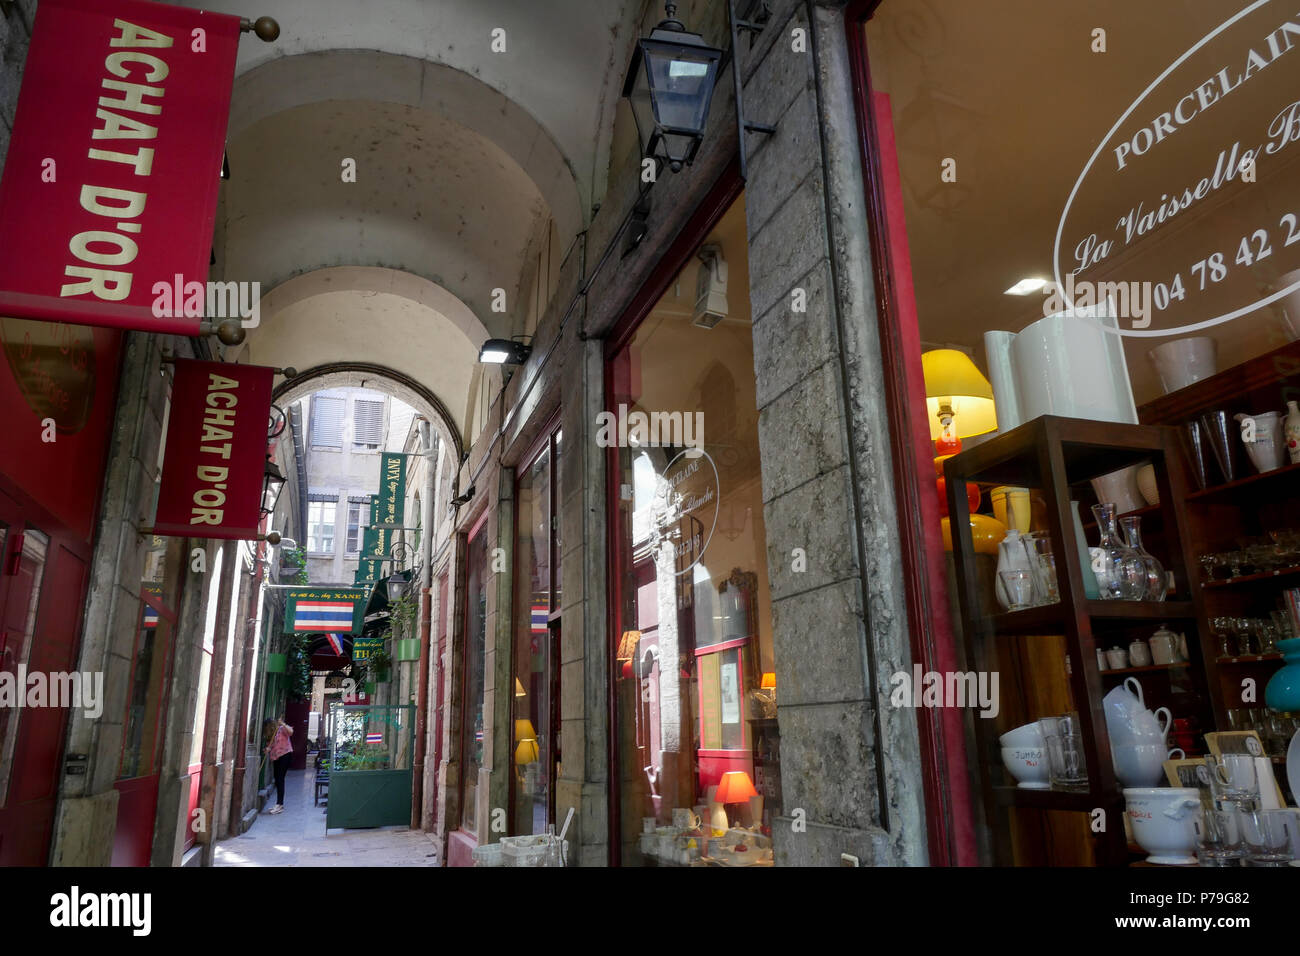 Le Passage des imprimeurs, Lyon, France Stock Photo - Alamy